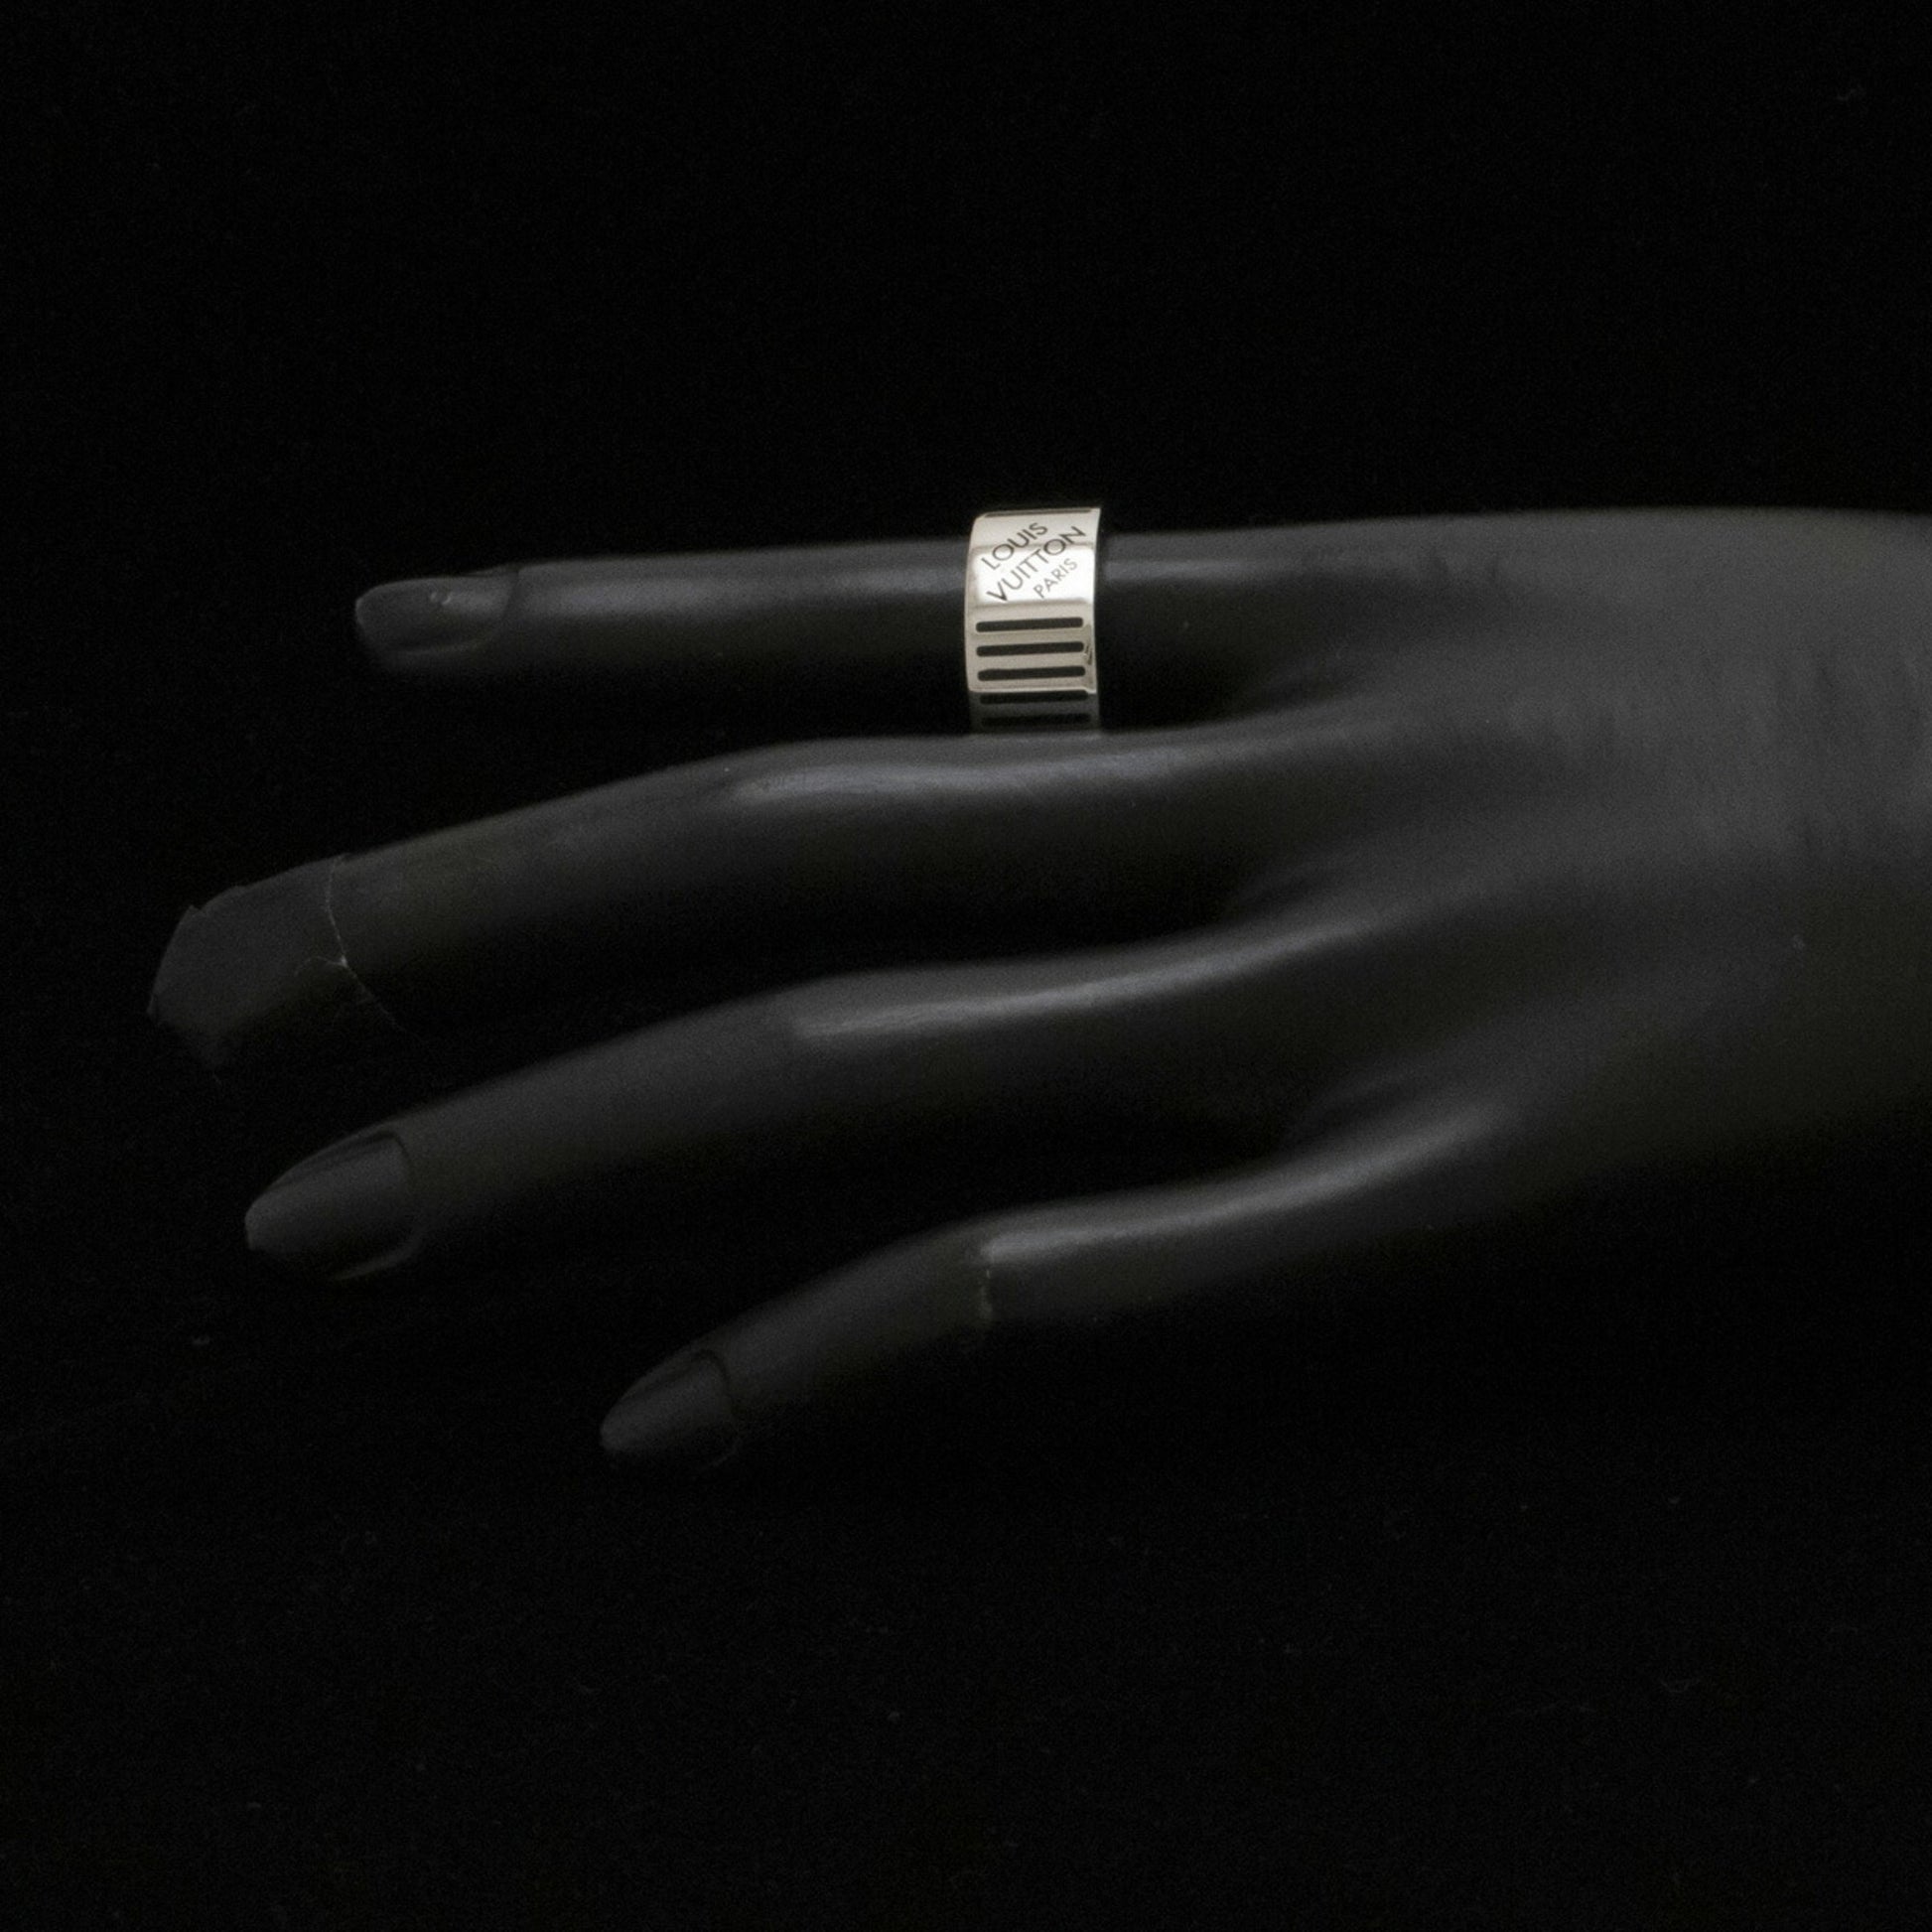 Louis Vuitton Louis Vuitton Berg Damier Colors Ring No. 19 # 20 M Size Black  M62493